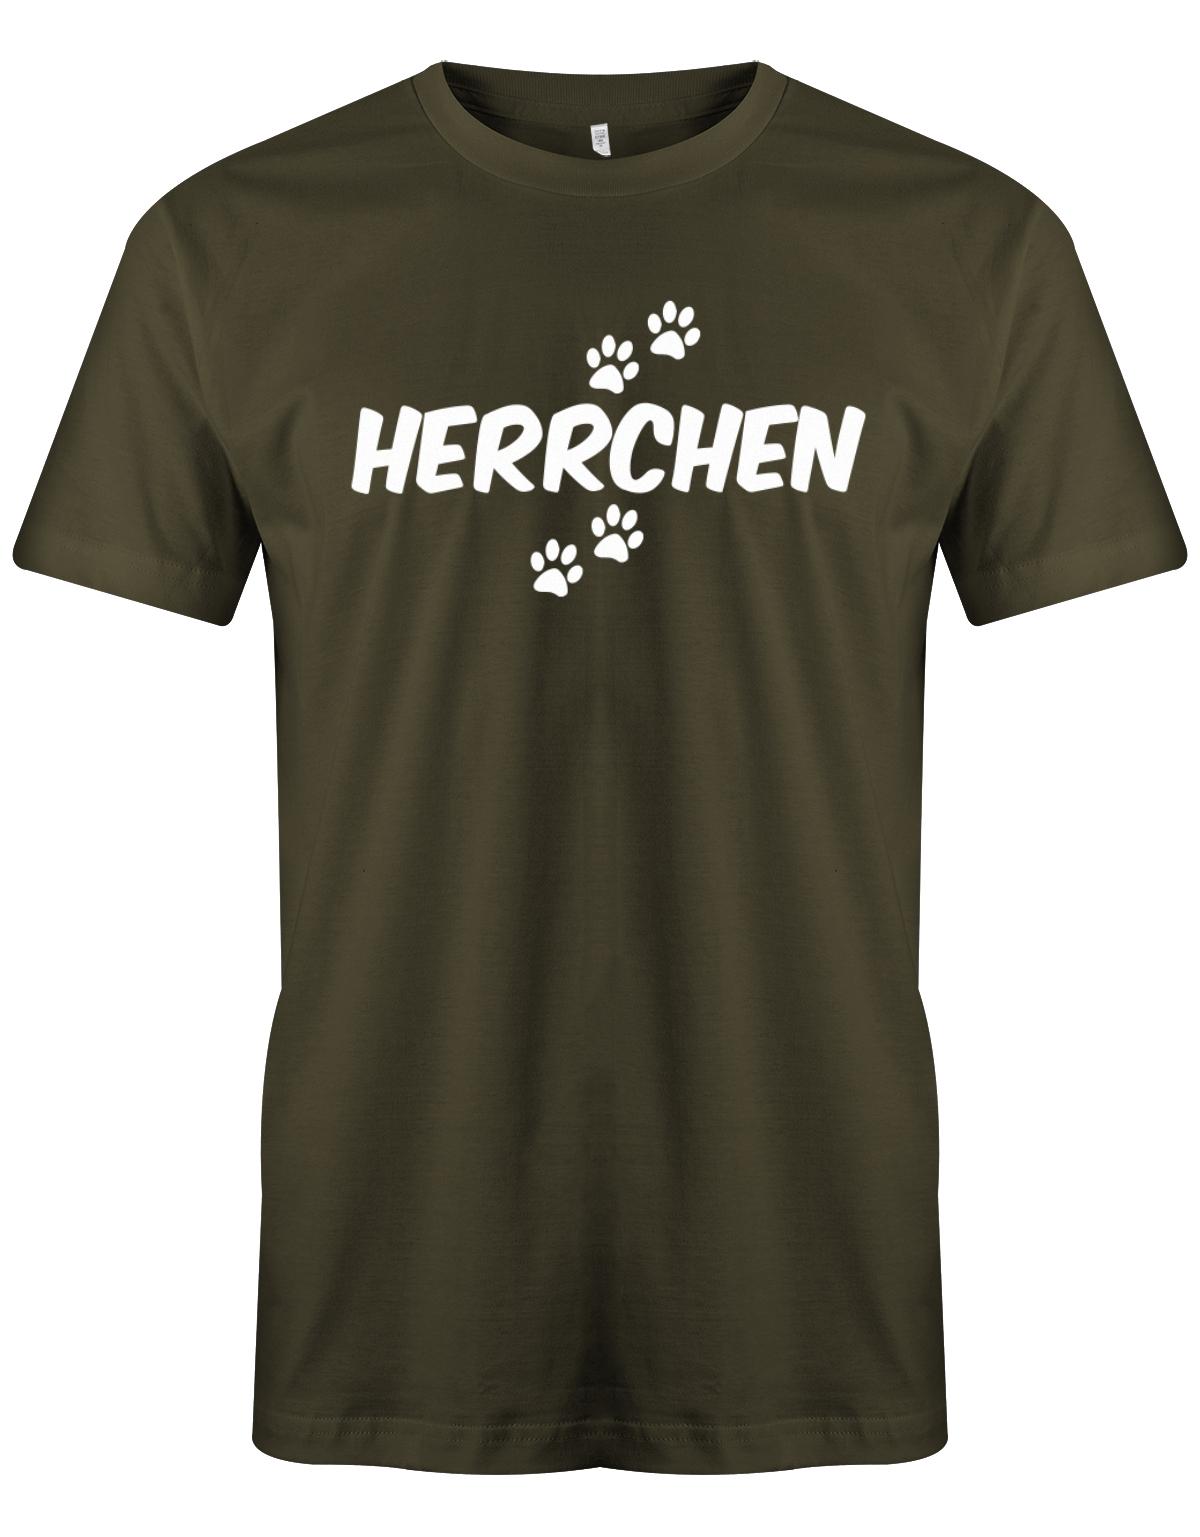 Herrchen-hundebesitzer-Herren-Shirt-Army